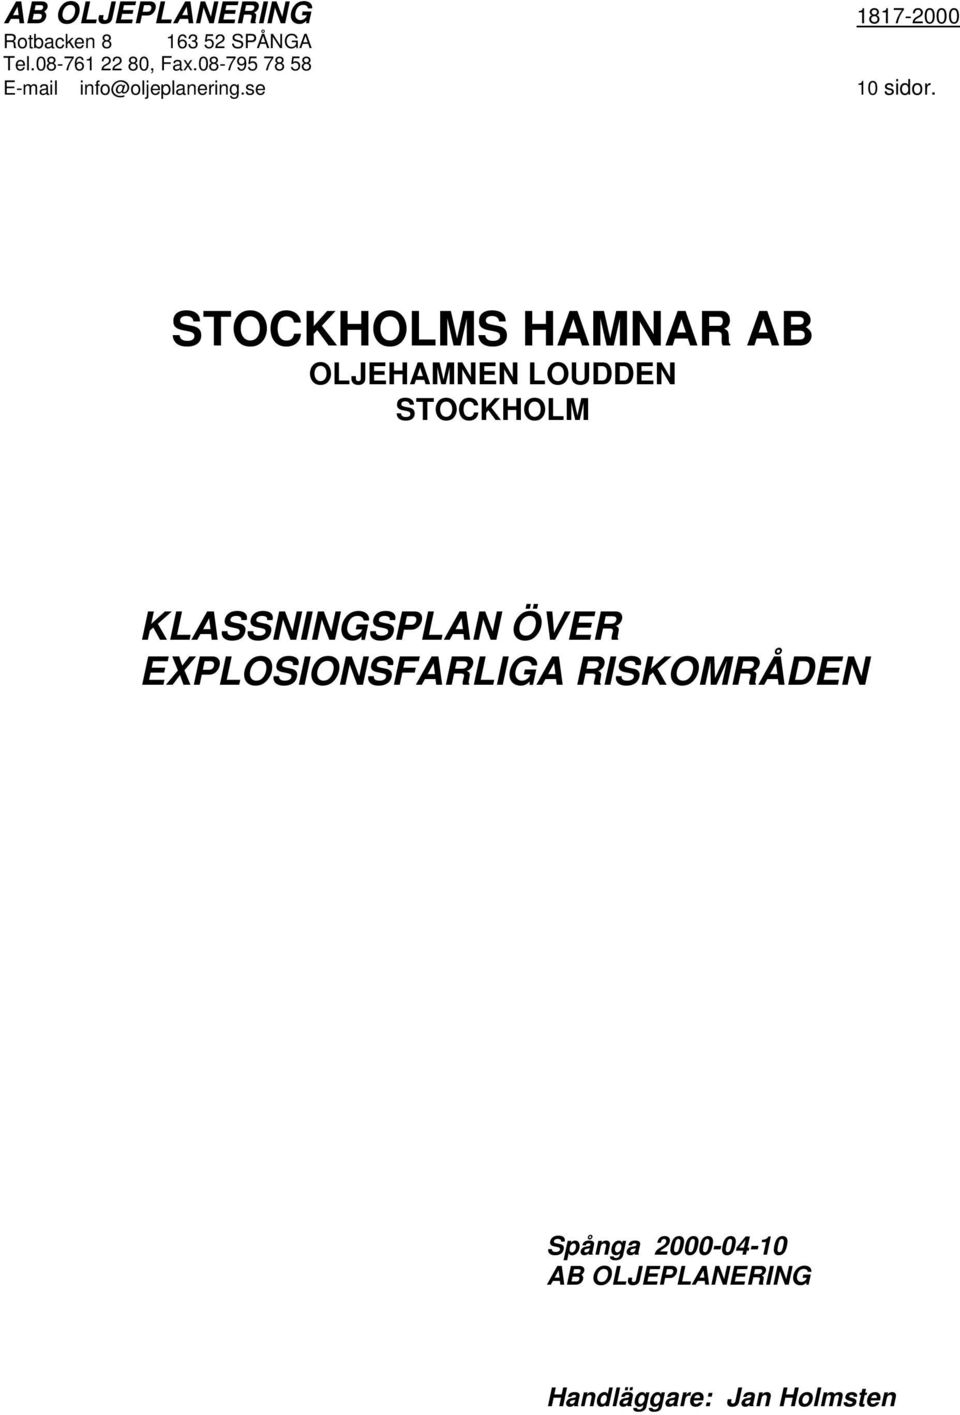 STOCKHOLMS HAMNAR AB OLJEHAMNEN LOUDDEN STOCKHOLM KLASSNINGSPLAN